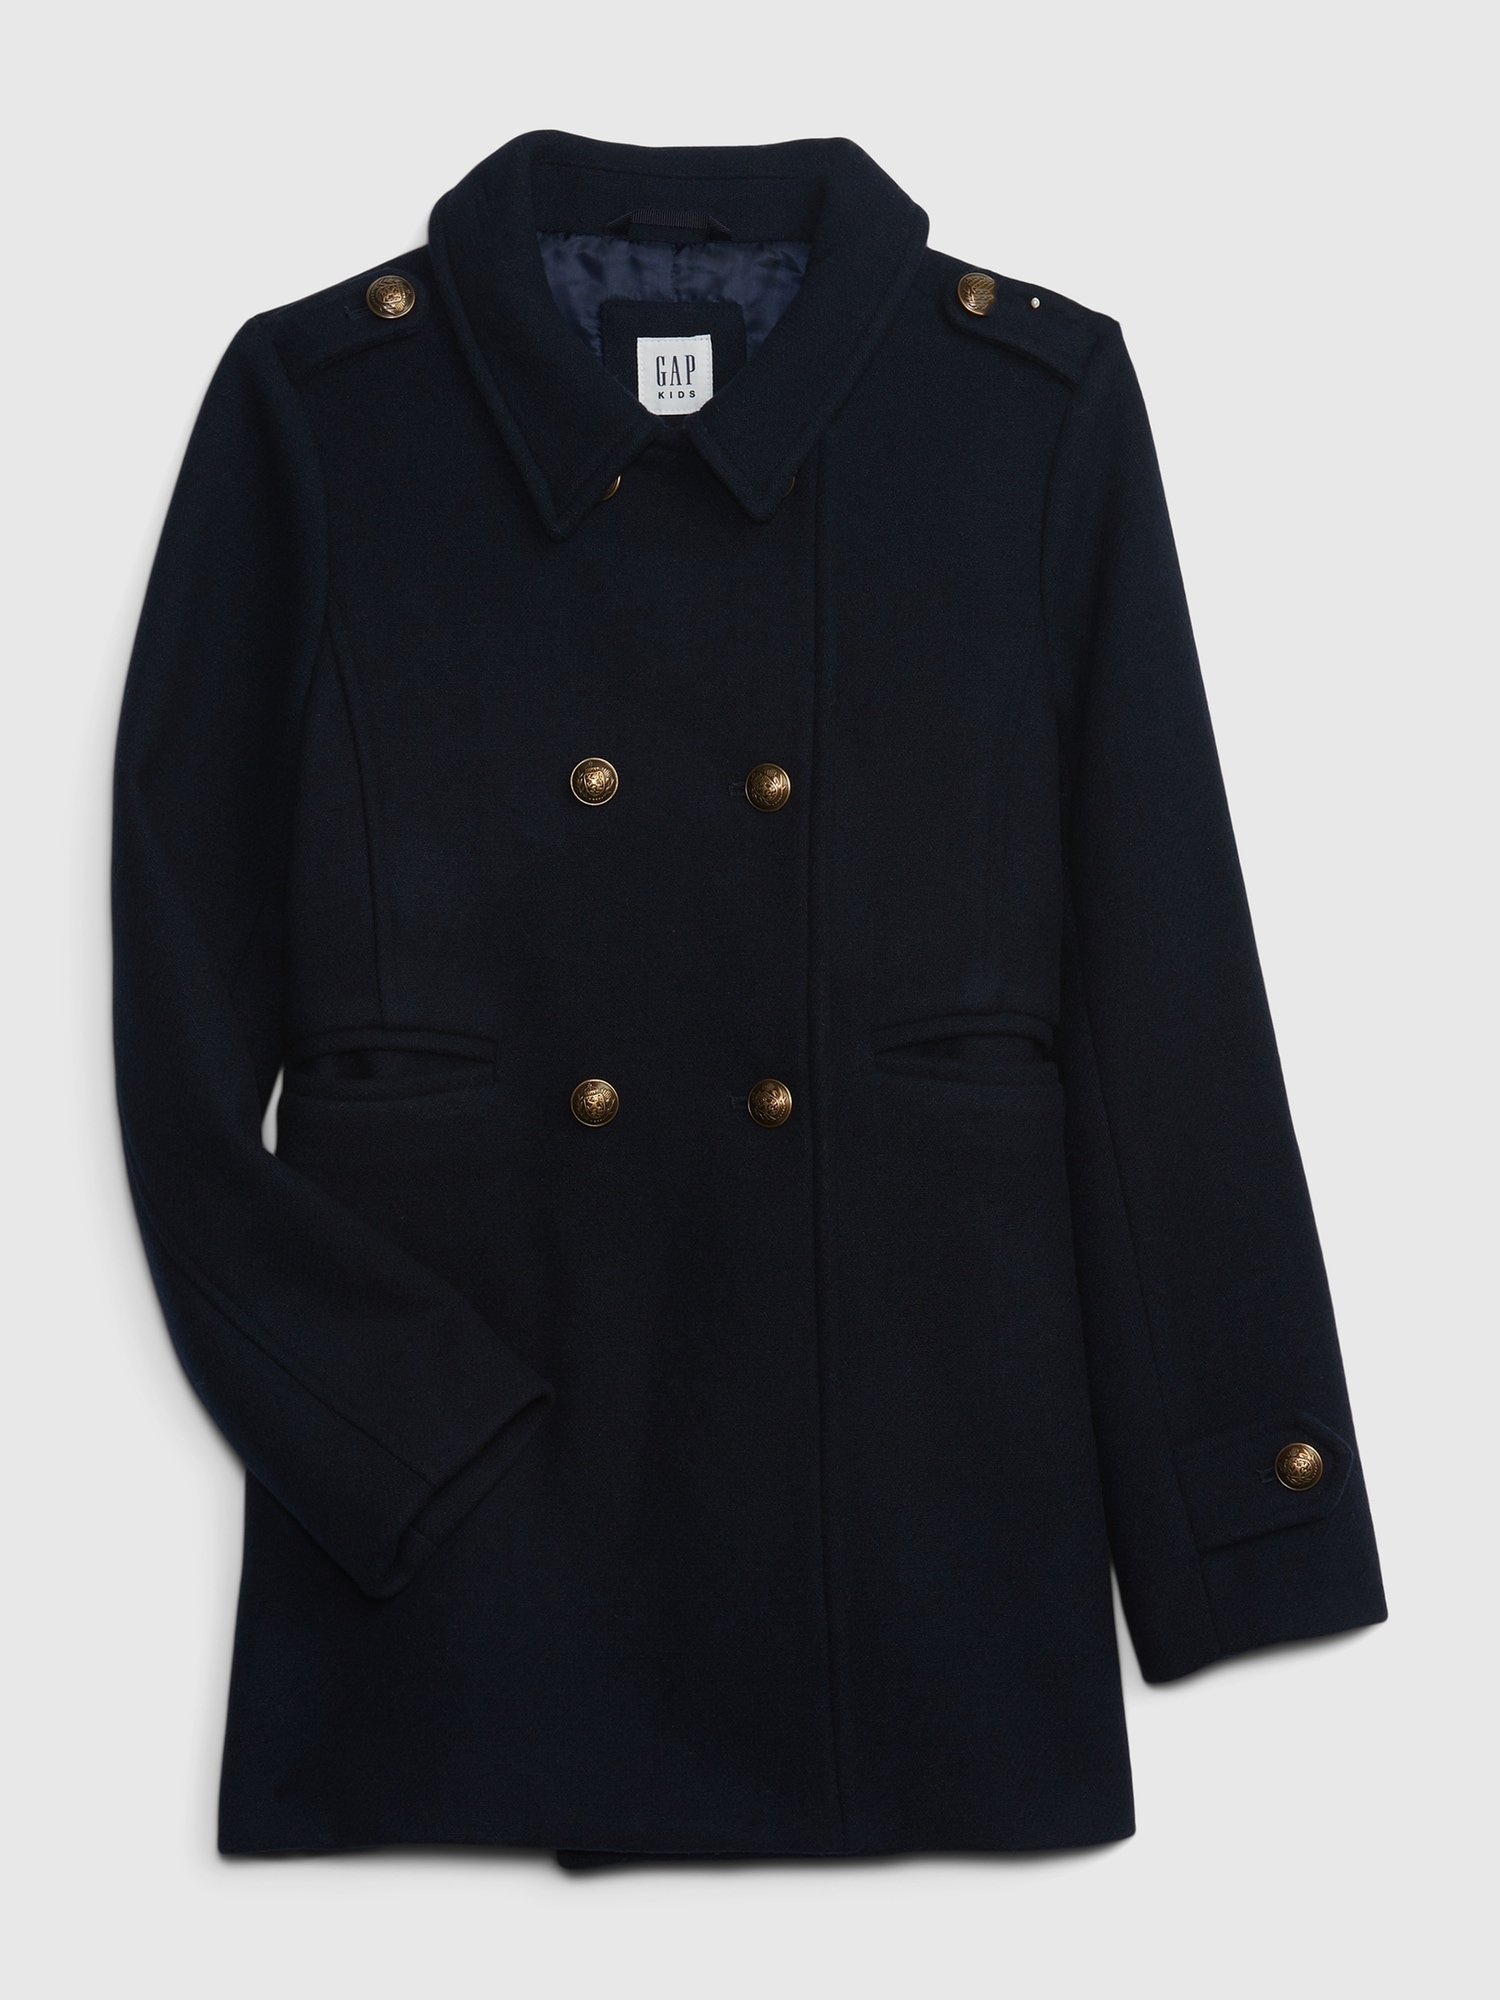 GAP, Jackets & Coats